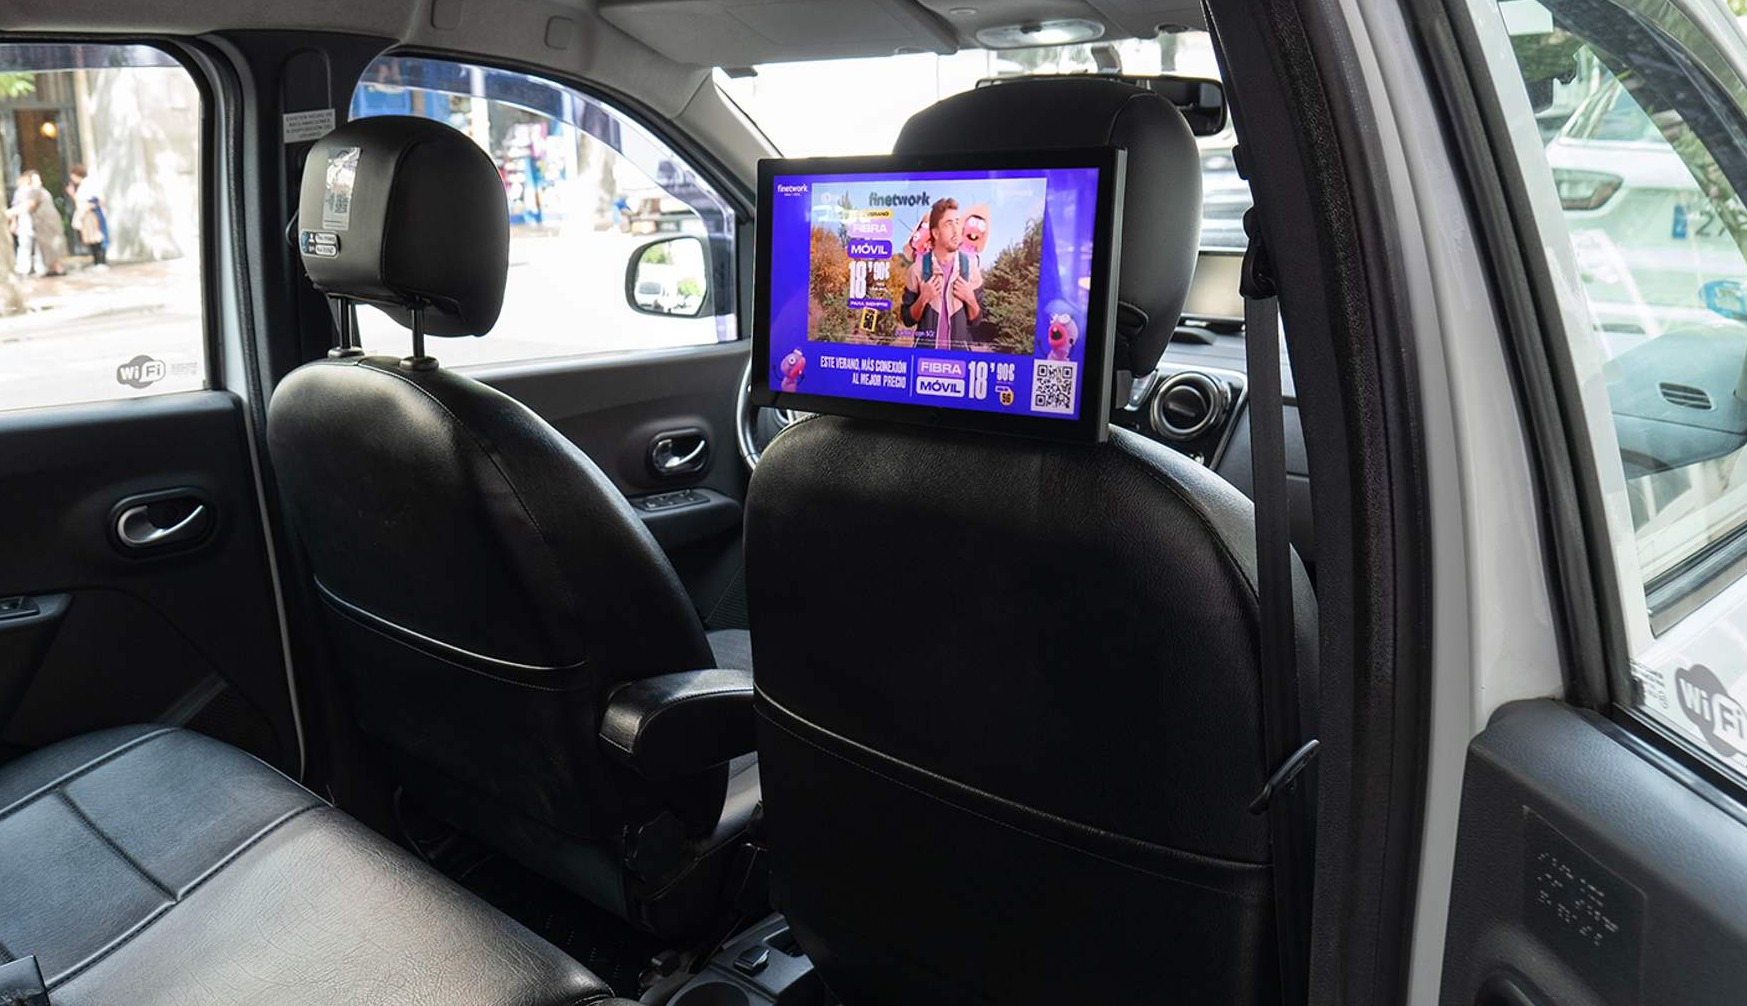 una pantalla en el interior de un taxi, sujeta en el asiento del copiloto